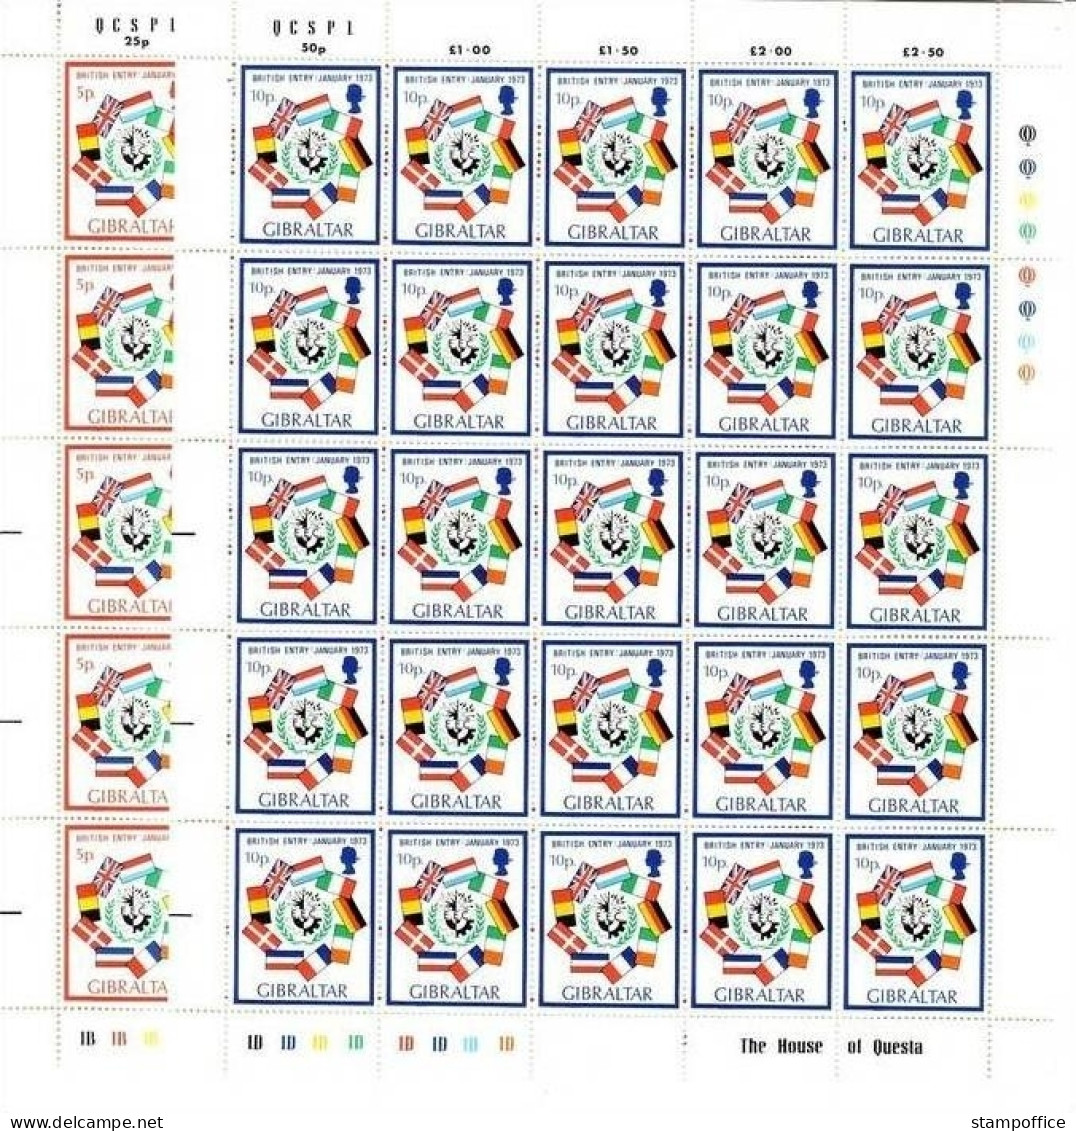 GIBRALTAR MI-NR. 297-298 POSTFRISCH(MINT) Bogen AUFNAHME IN DIE EG - FLAGGEN - Stamps